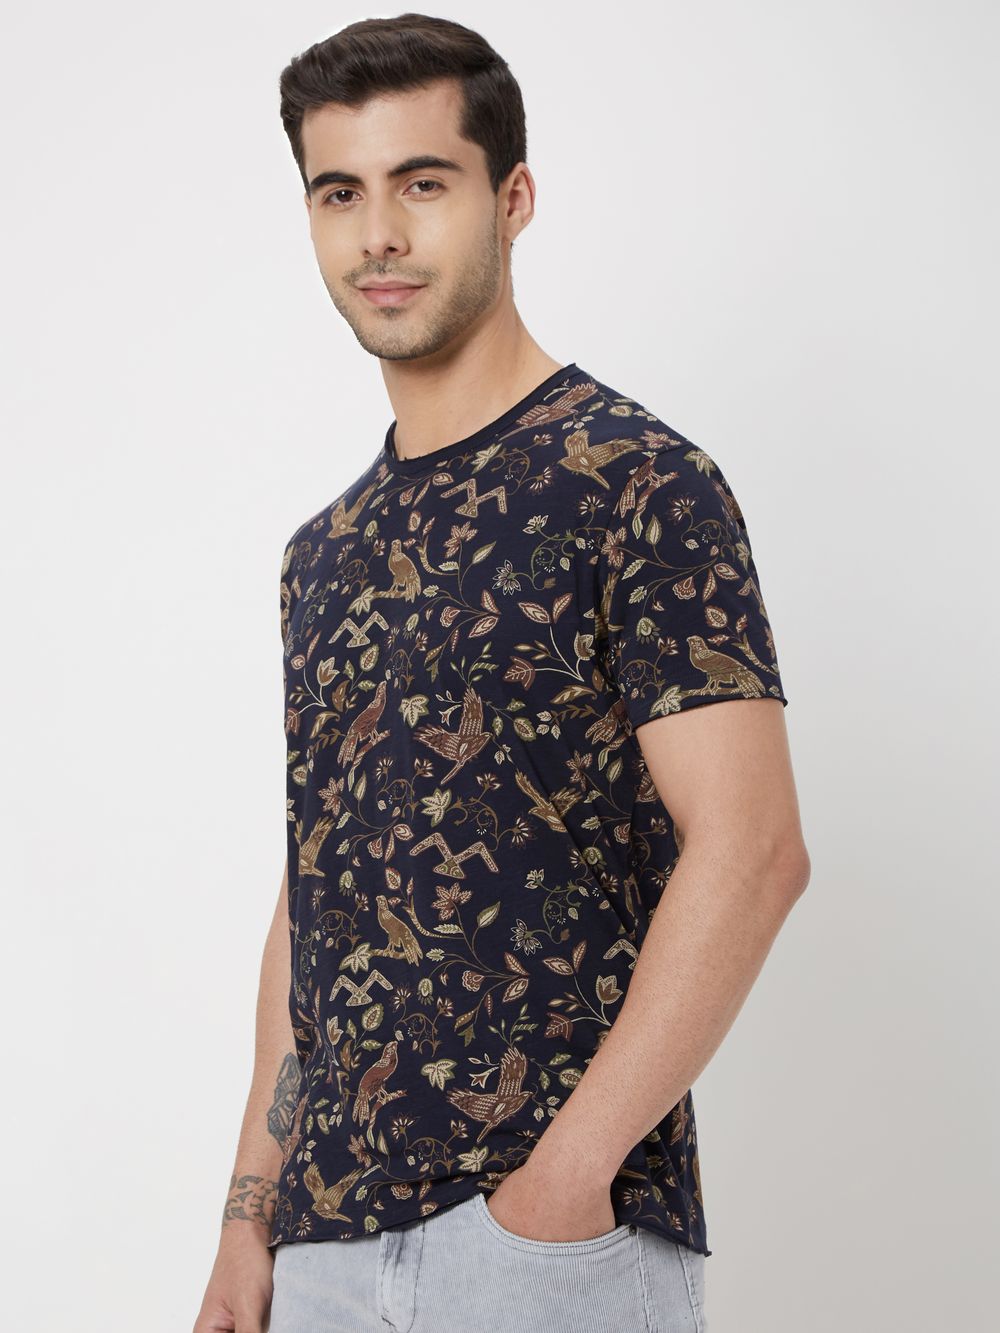 Navy & Khaki Floral Print Slub Jersey T-Shirt